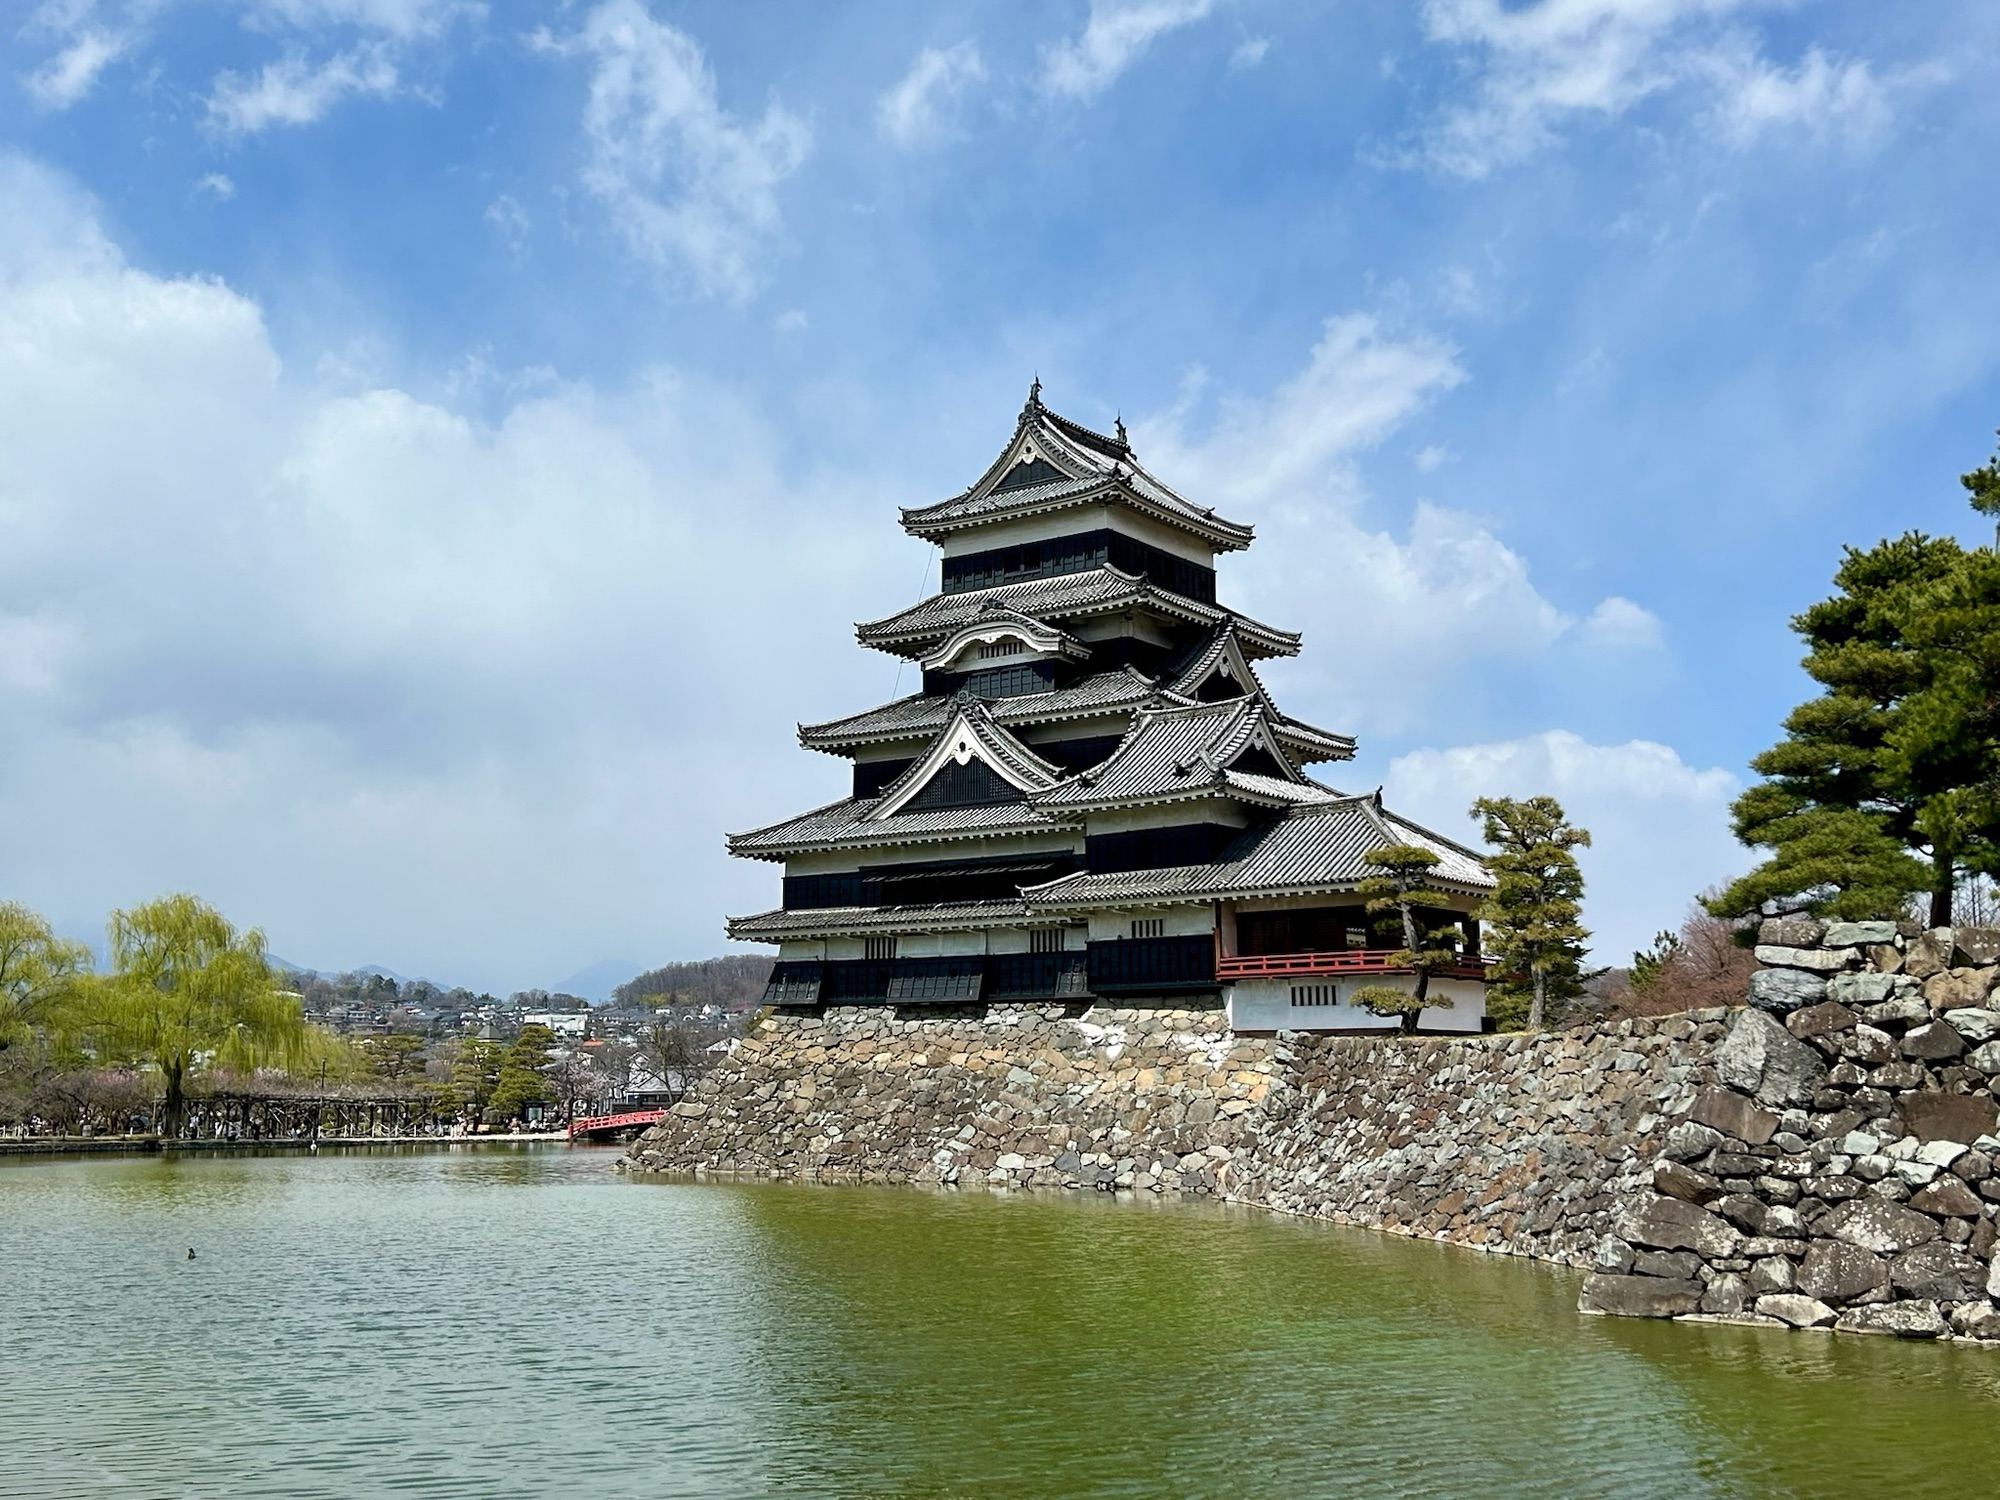 石川数正出奔！ゆかりの「松本城」へ…戦うための黒い天守にこめた思いは？